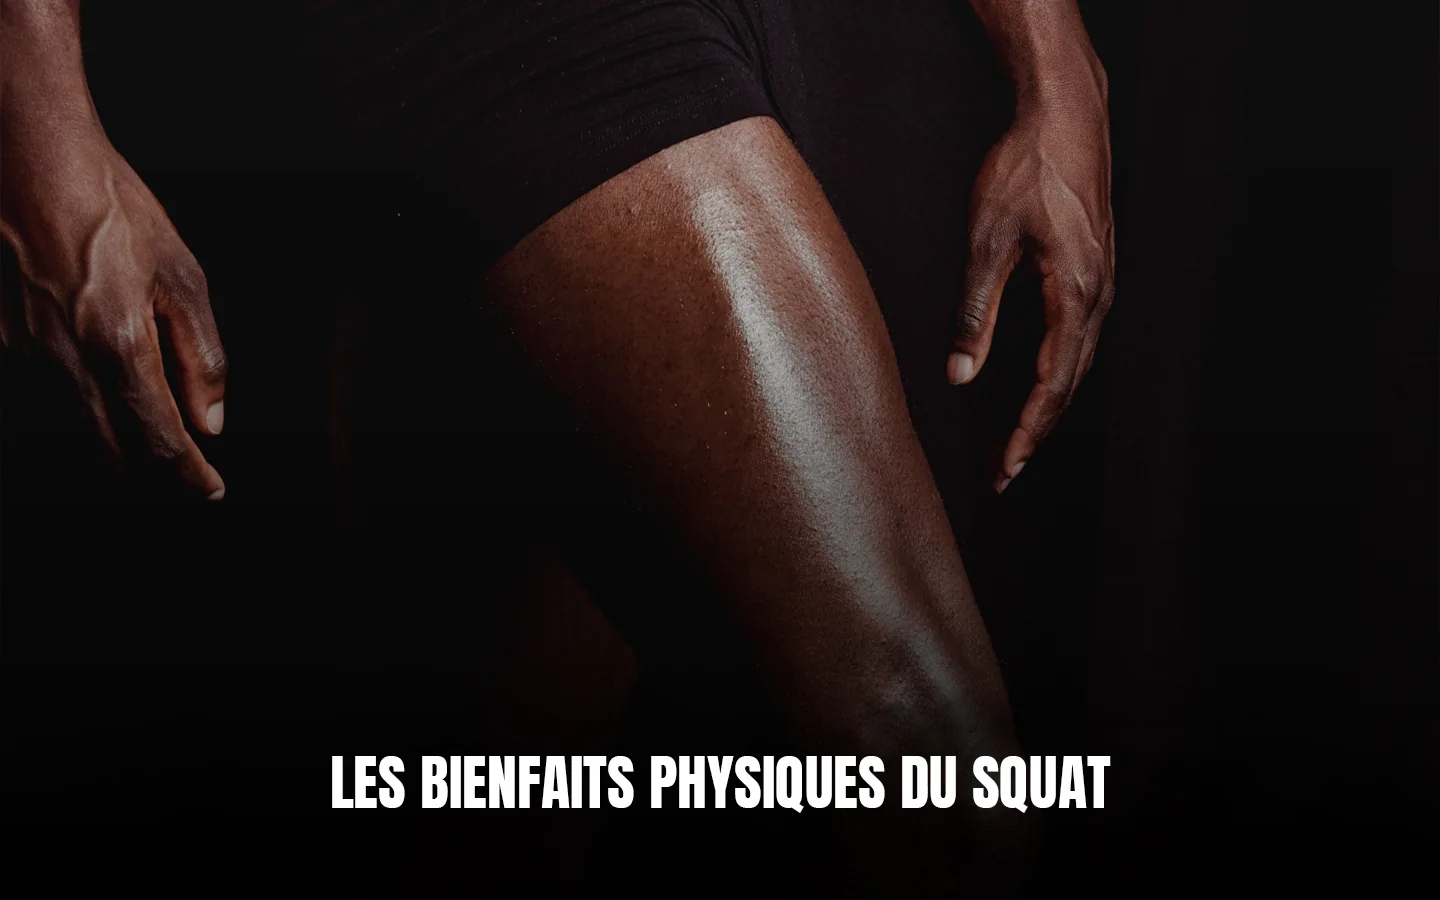 Les bienfaits physiques du squat